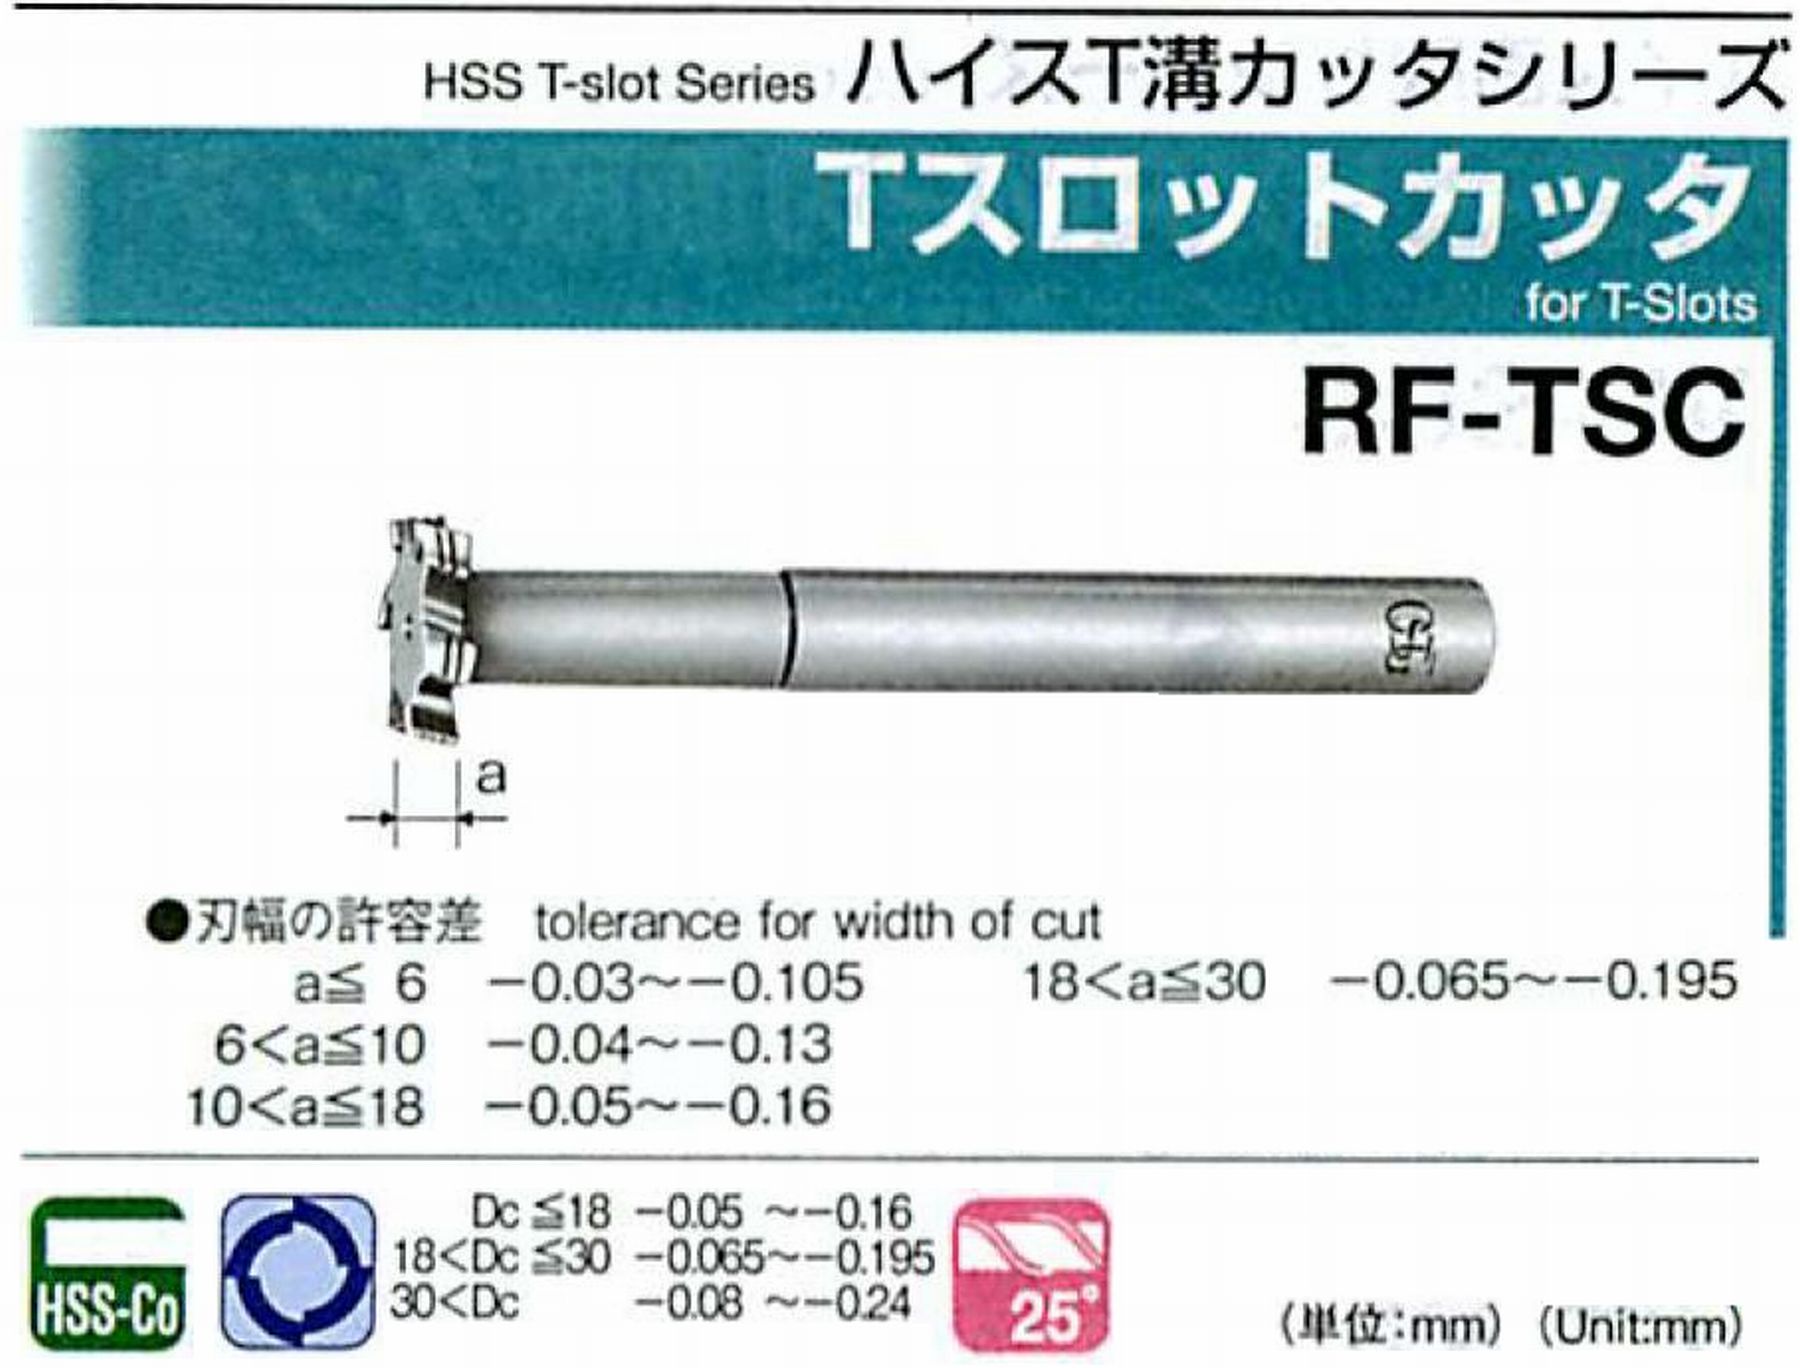 オーエスジー/OSG Tスロットカッタ RF-TSC 外径40 刃幅10 全長165 シャンク径20mm 首下長62 首径19.6 刃数6